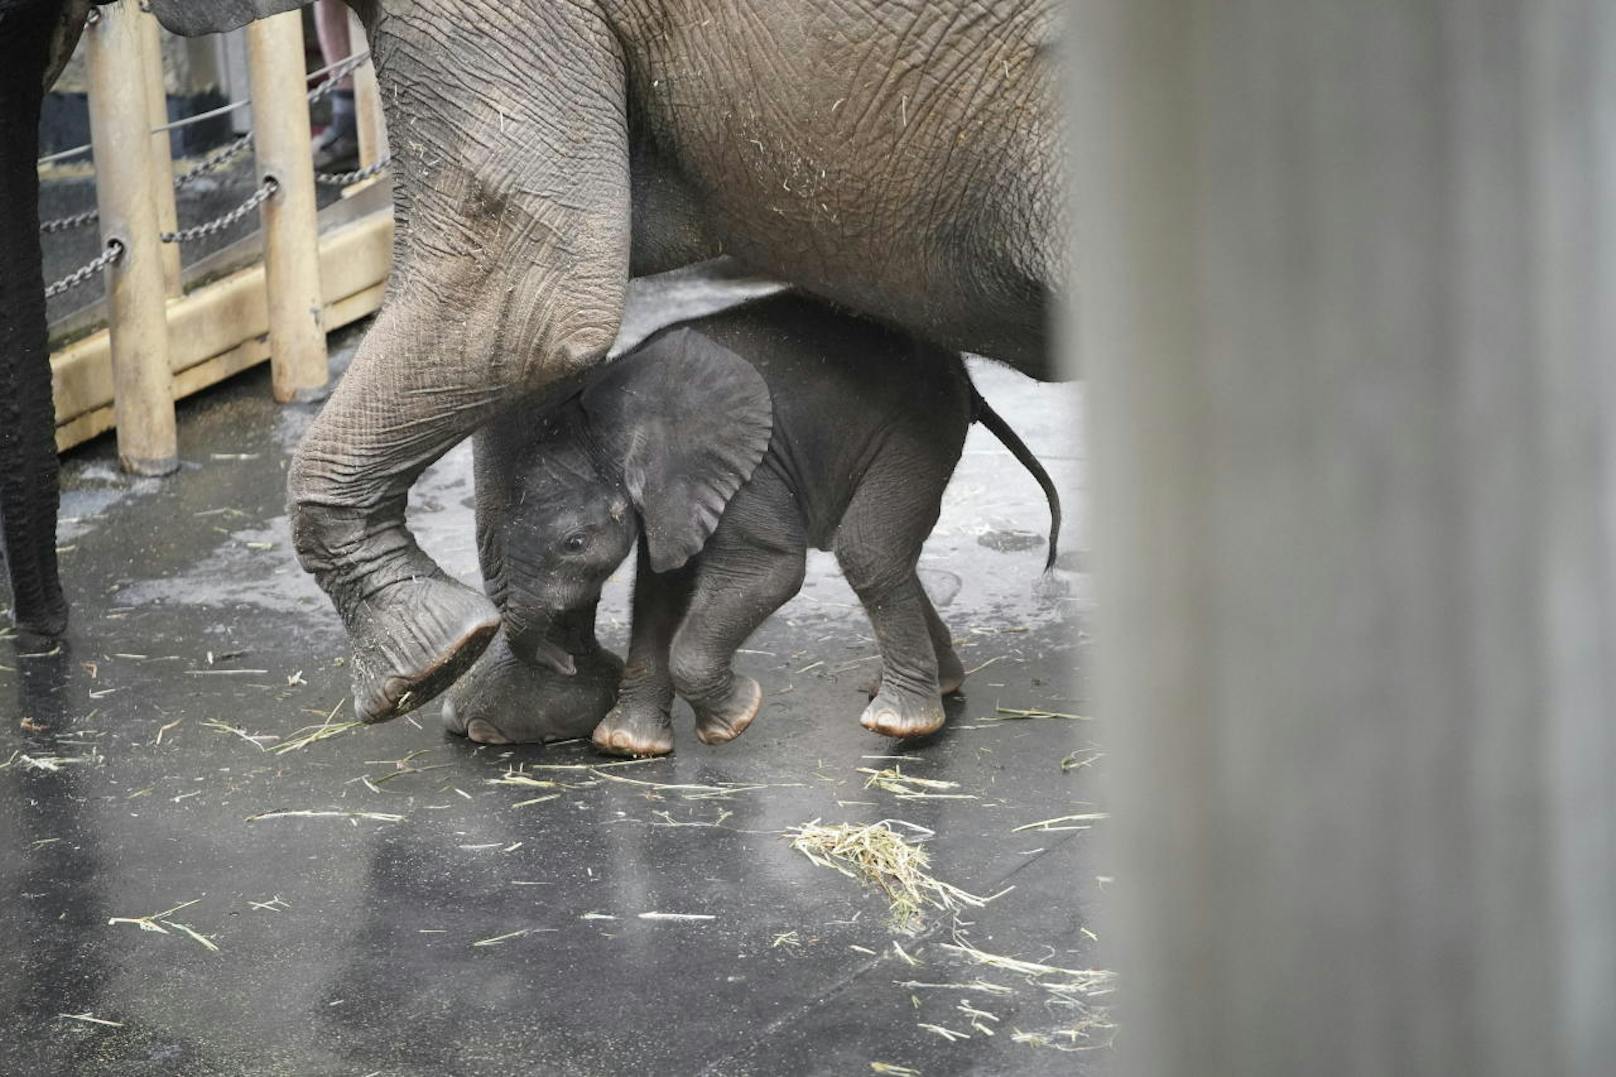 Derzeit sind die beiden von 10 bis 11 Uhr im Schönbrunner Zoo zu sehen. "Sie brauchen noch ihre Ruhe", heißt es aus dem Schönbrunner Zoo.